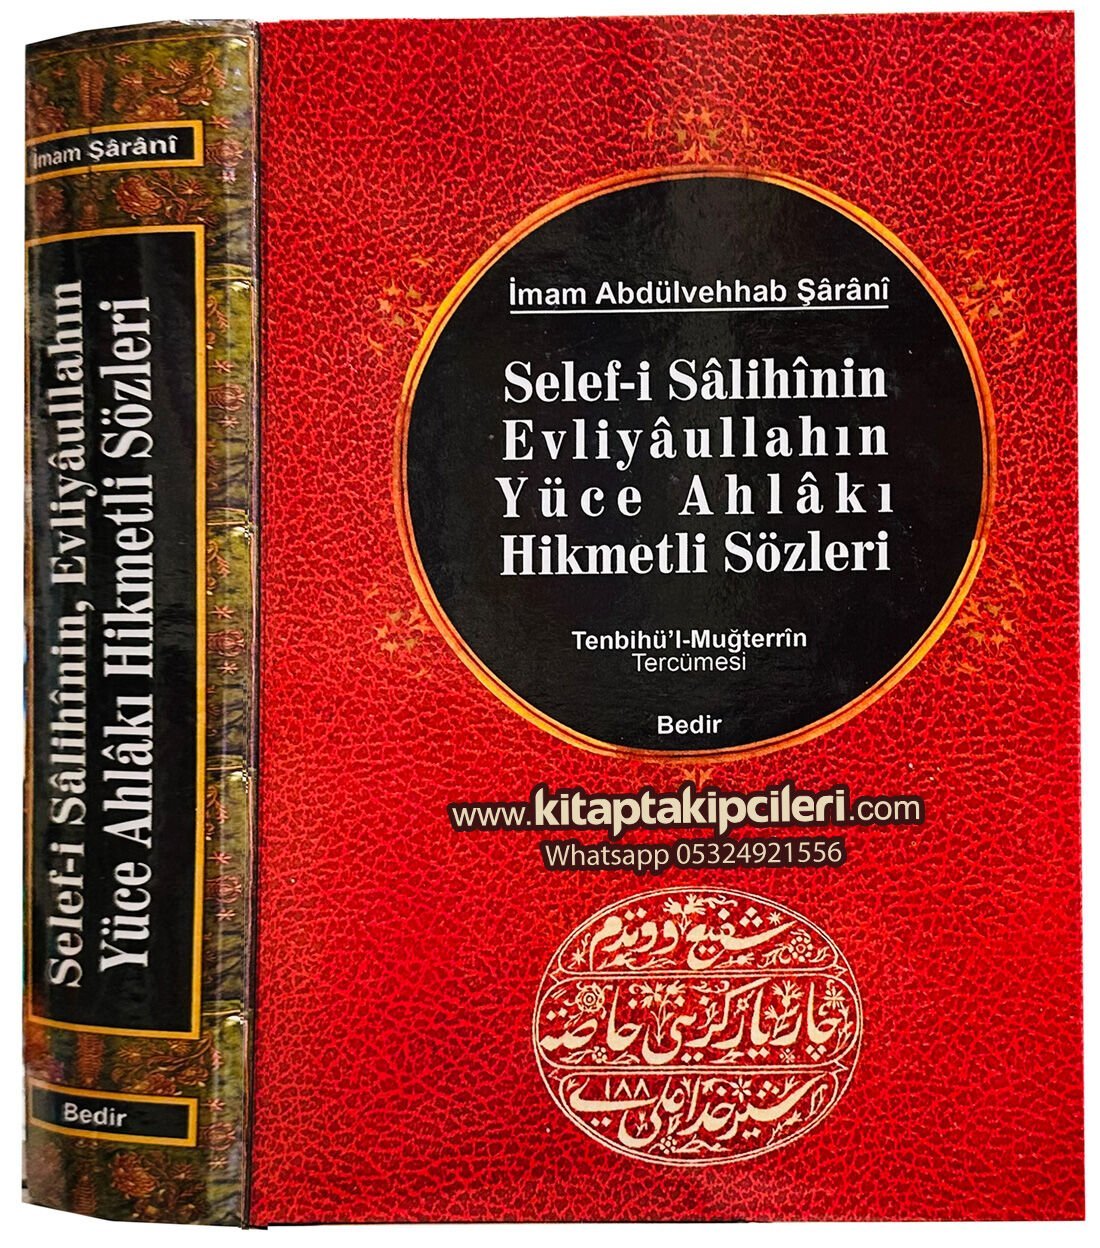 Selefi Salihinin Evliyaullahın Yüce Ahlakı Hikmetli Sözleri, Tanbihül Muğterrin Tercümesi, İmam Abdulvehhab Şarani, 566 Sayfa